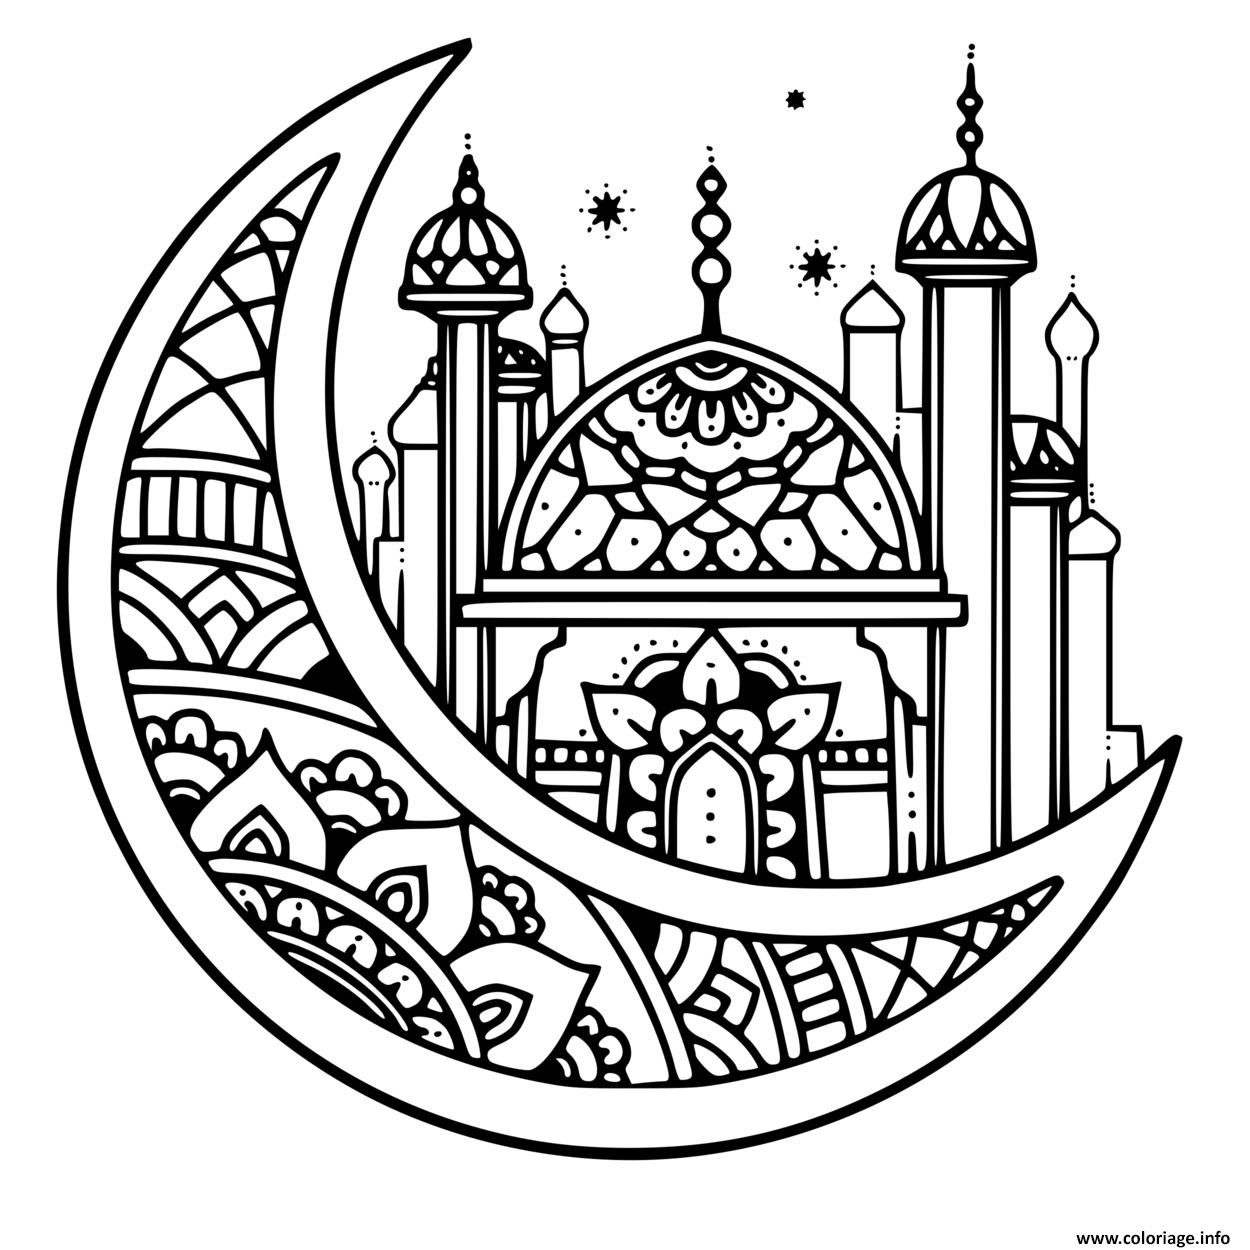 Dessin mandala ramadan adulte zentangle Coloriage Gratuit à Imprimer